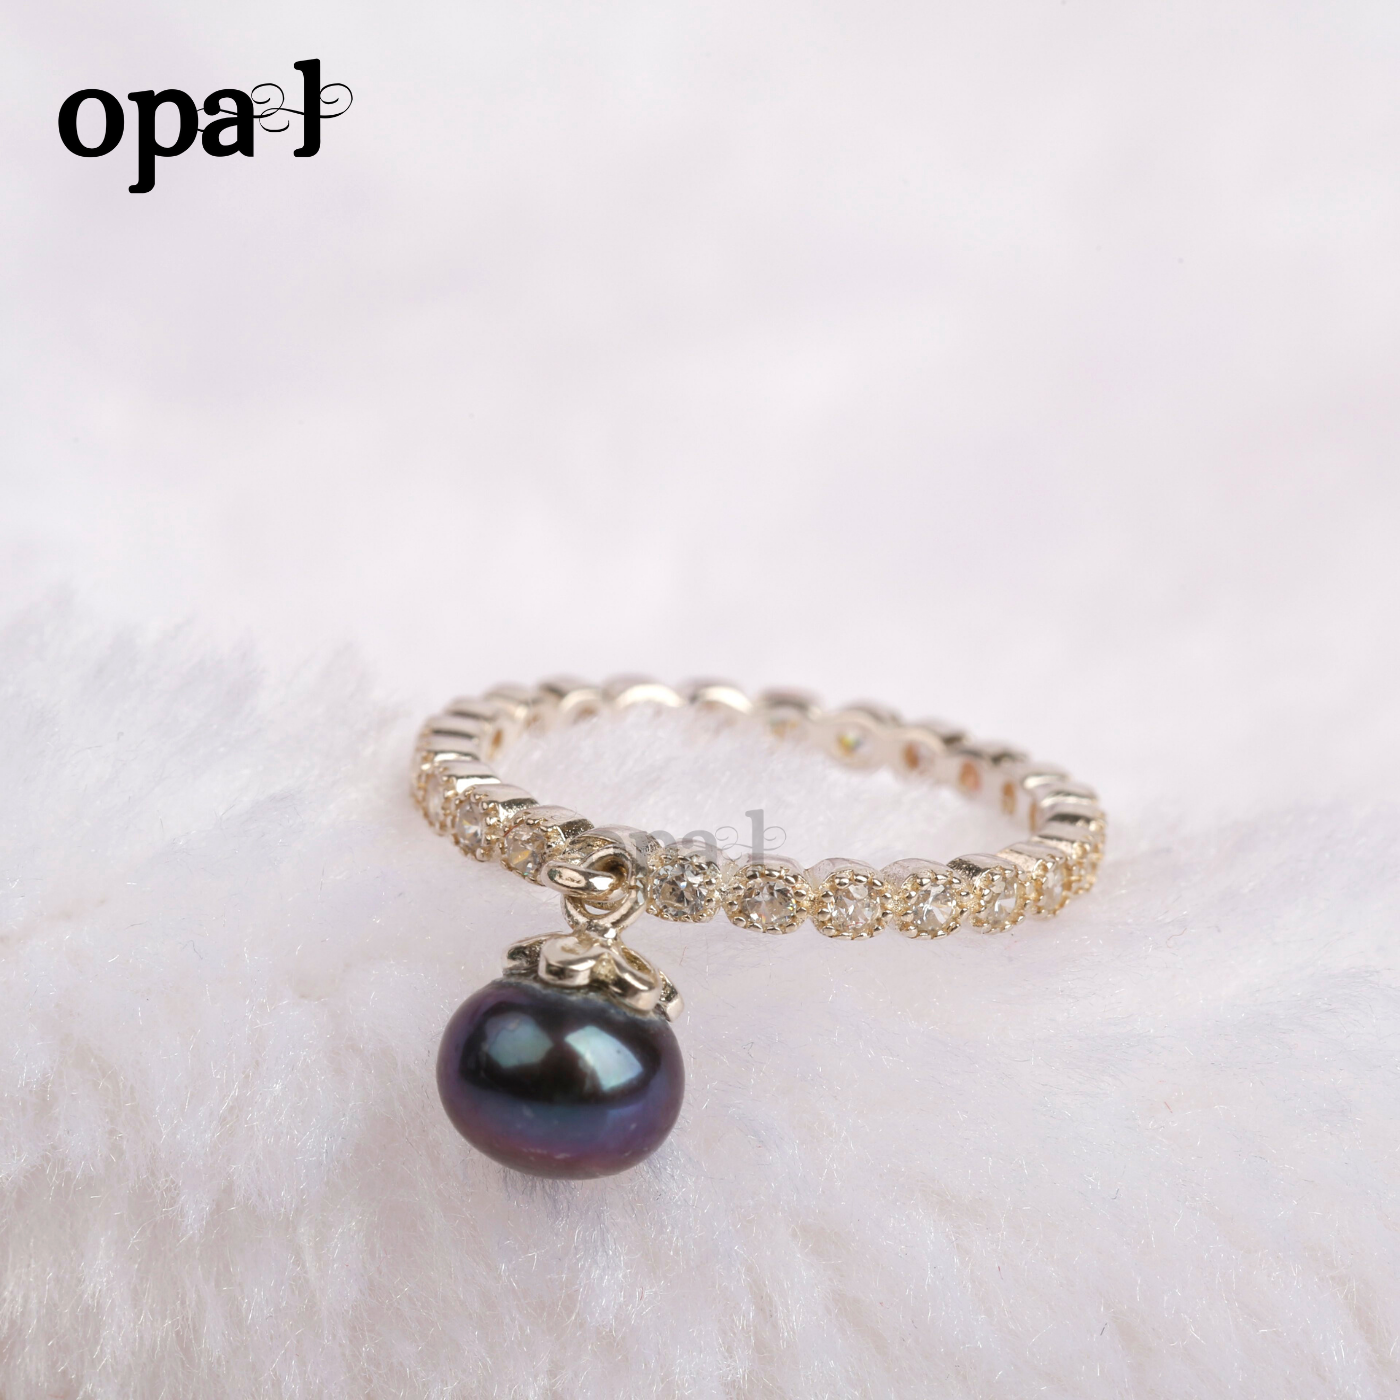  Nhẫn bạc nữ đính đá Ross + Ngọc trai  thương hiệu  Opal 